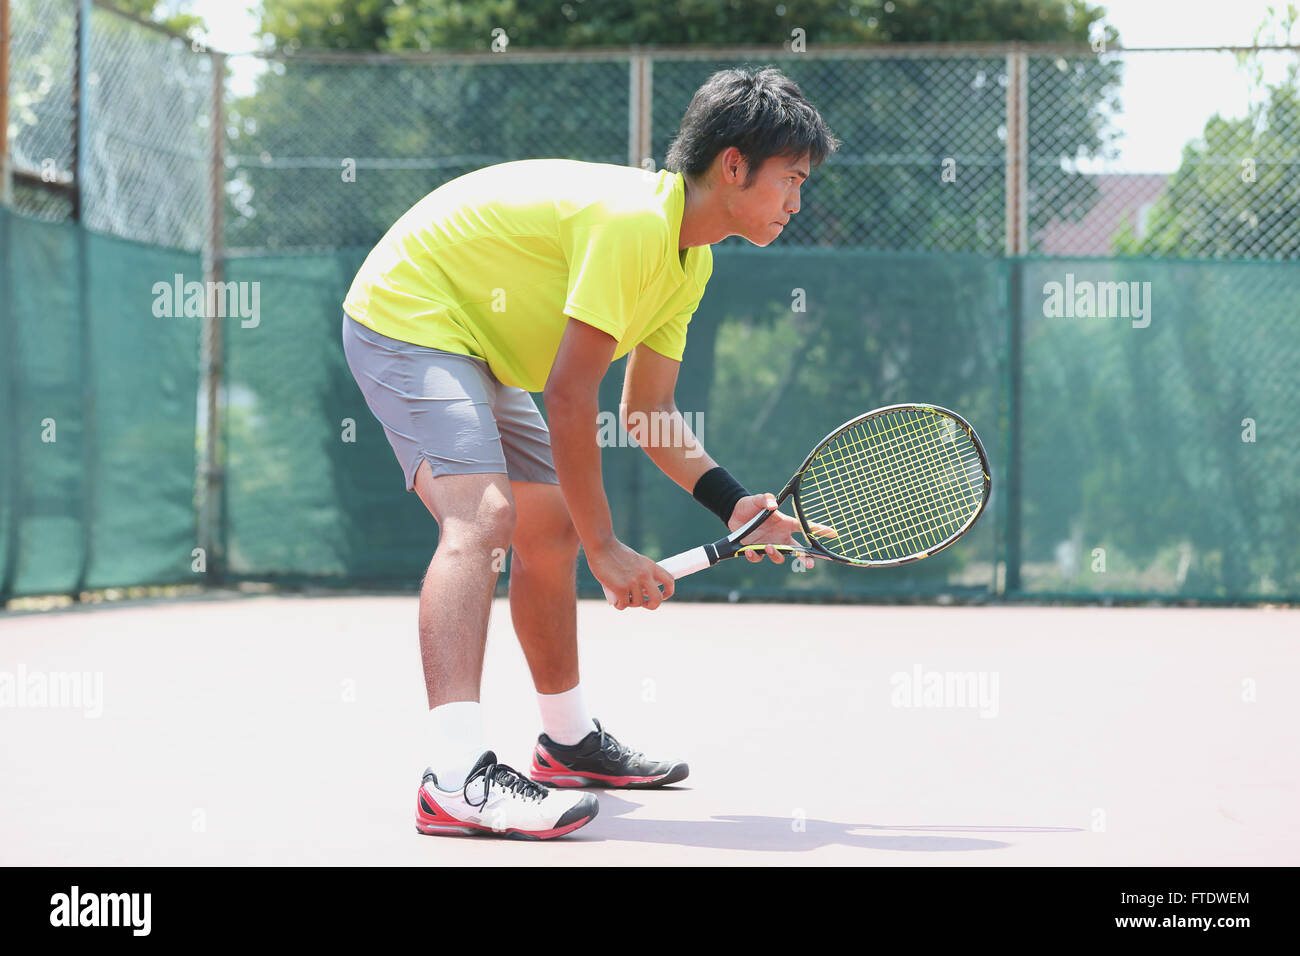 Jeune joueur de tennis japonais en action Banque D'Images